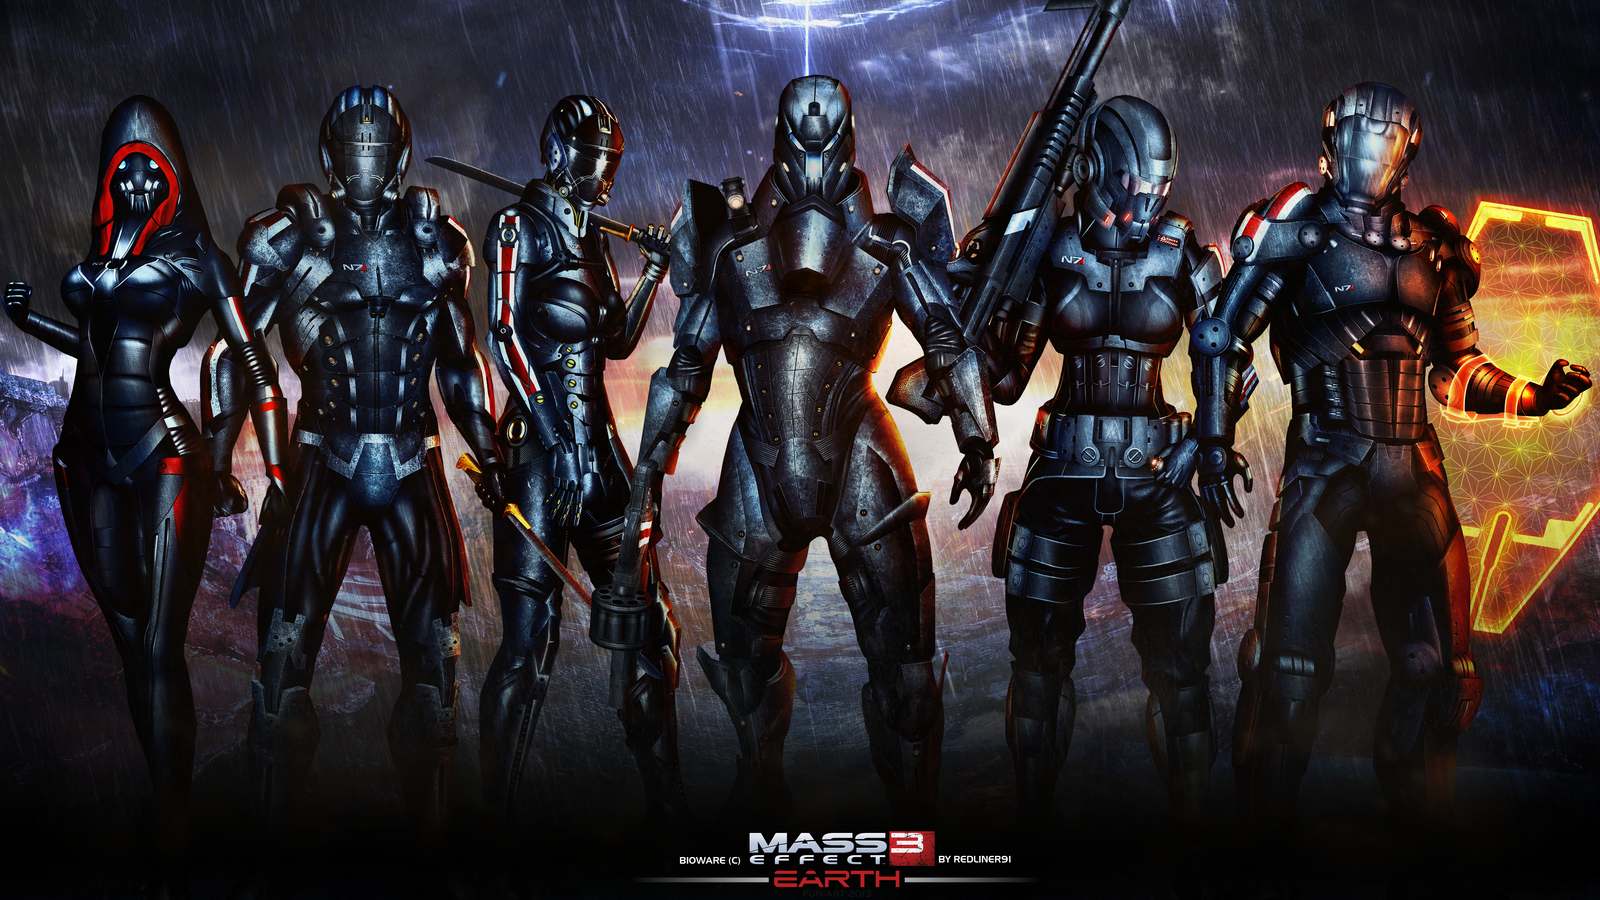 Mass Effect Dlc Earth Wallpaper By Redliner91